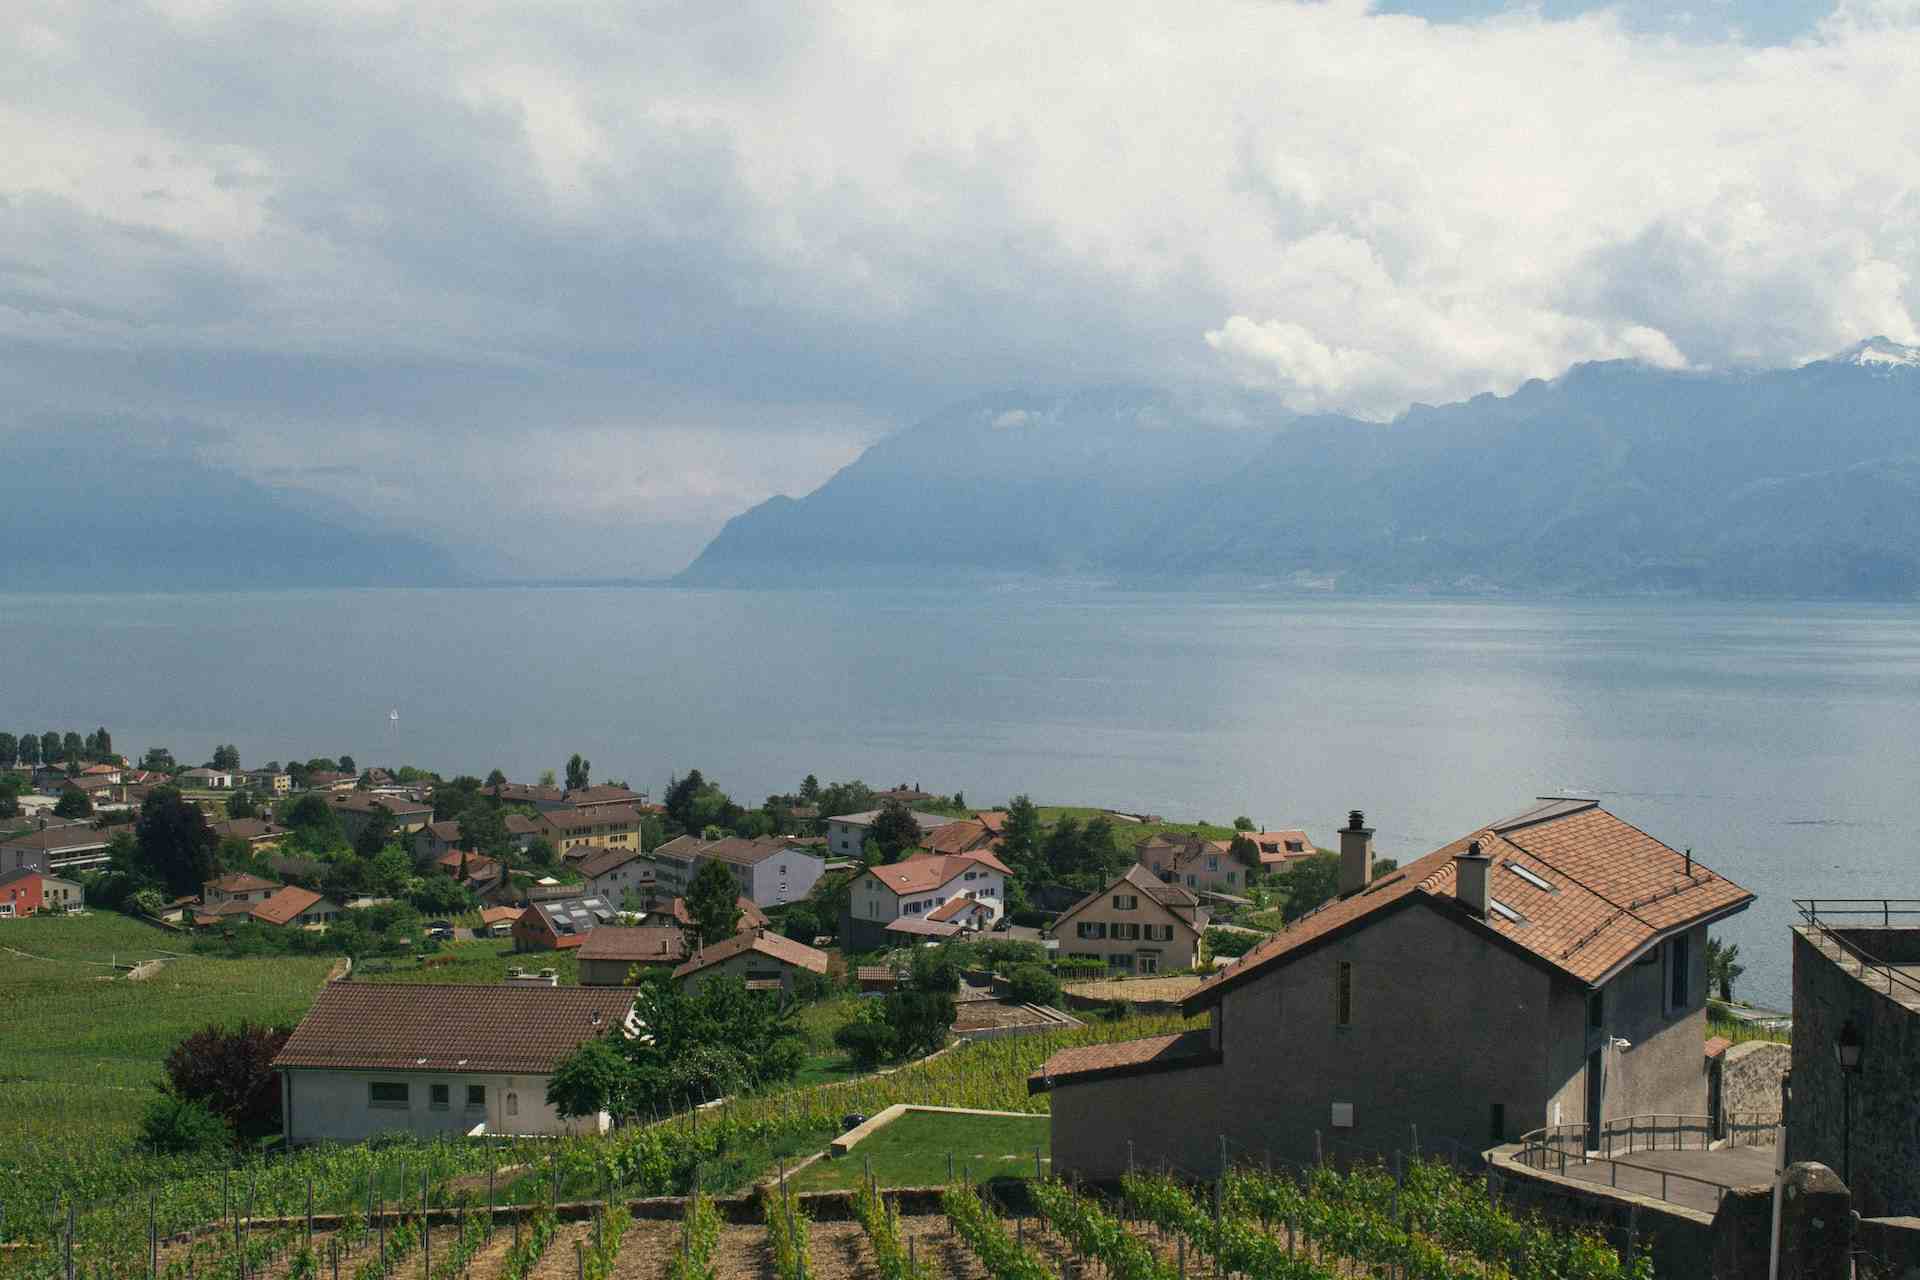 Ferme du Taulard, producteur à Romanel-sur-Lausanne canton de Vaud en Suisse